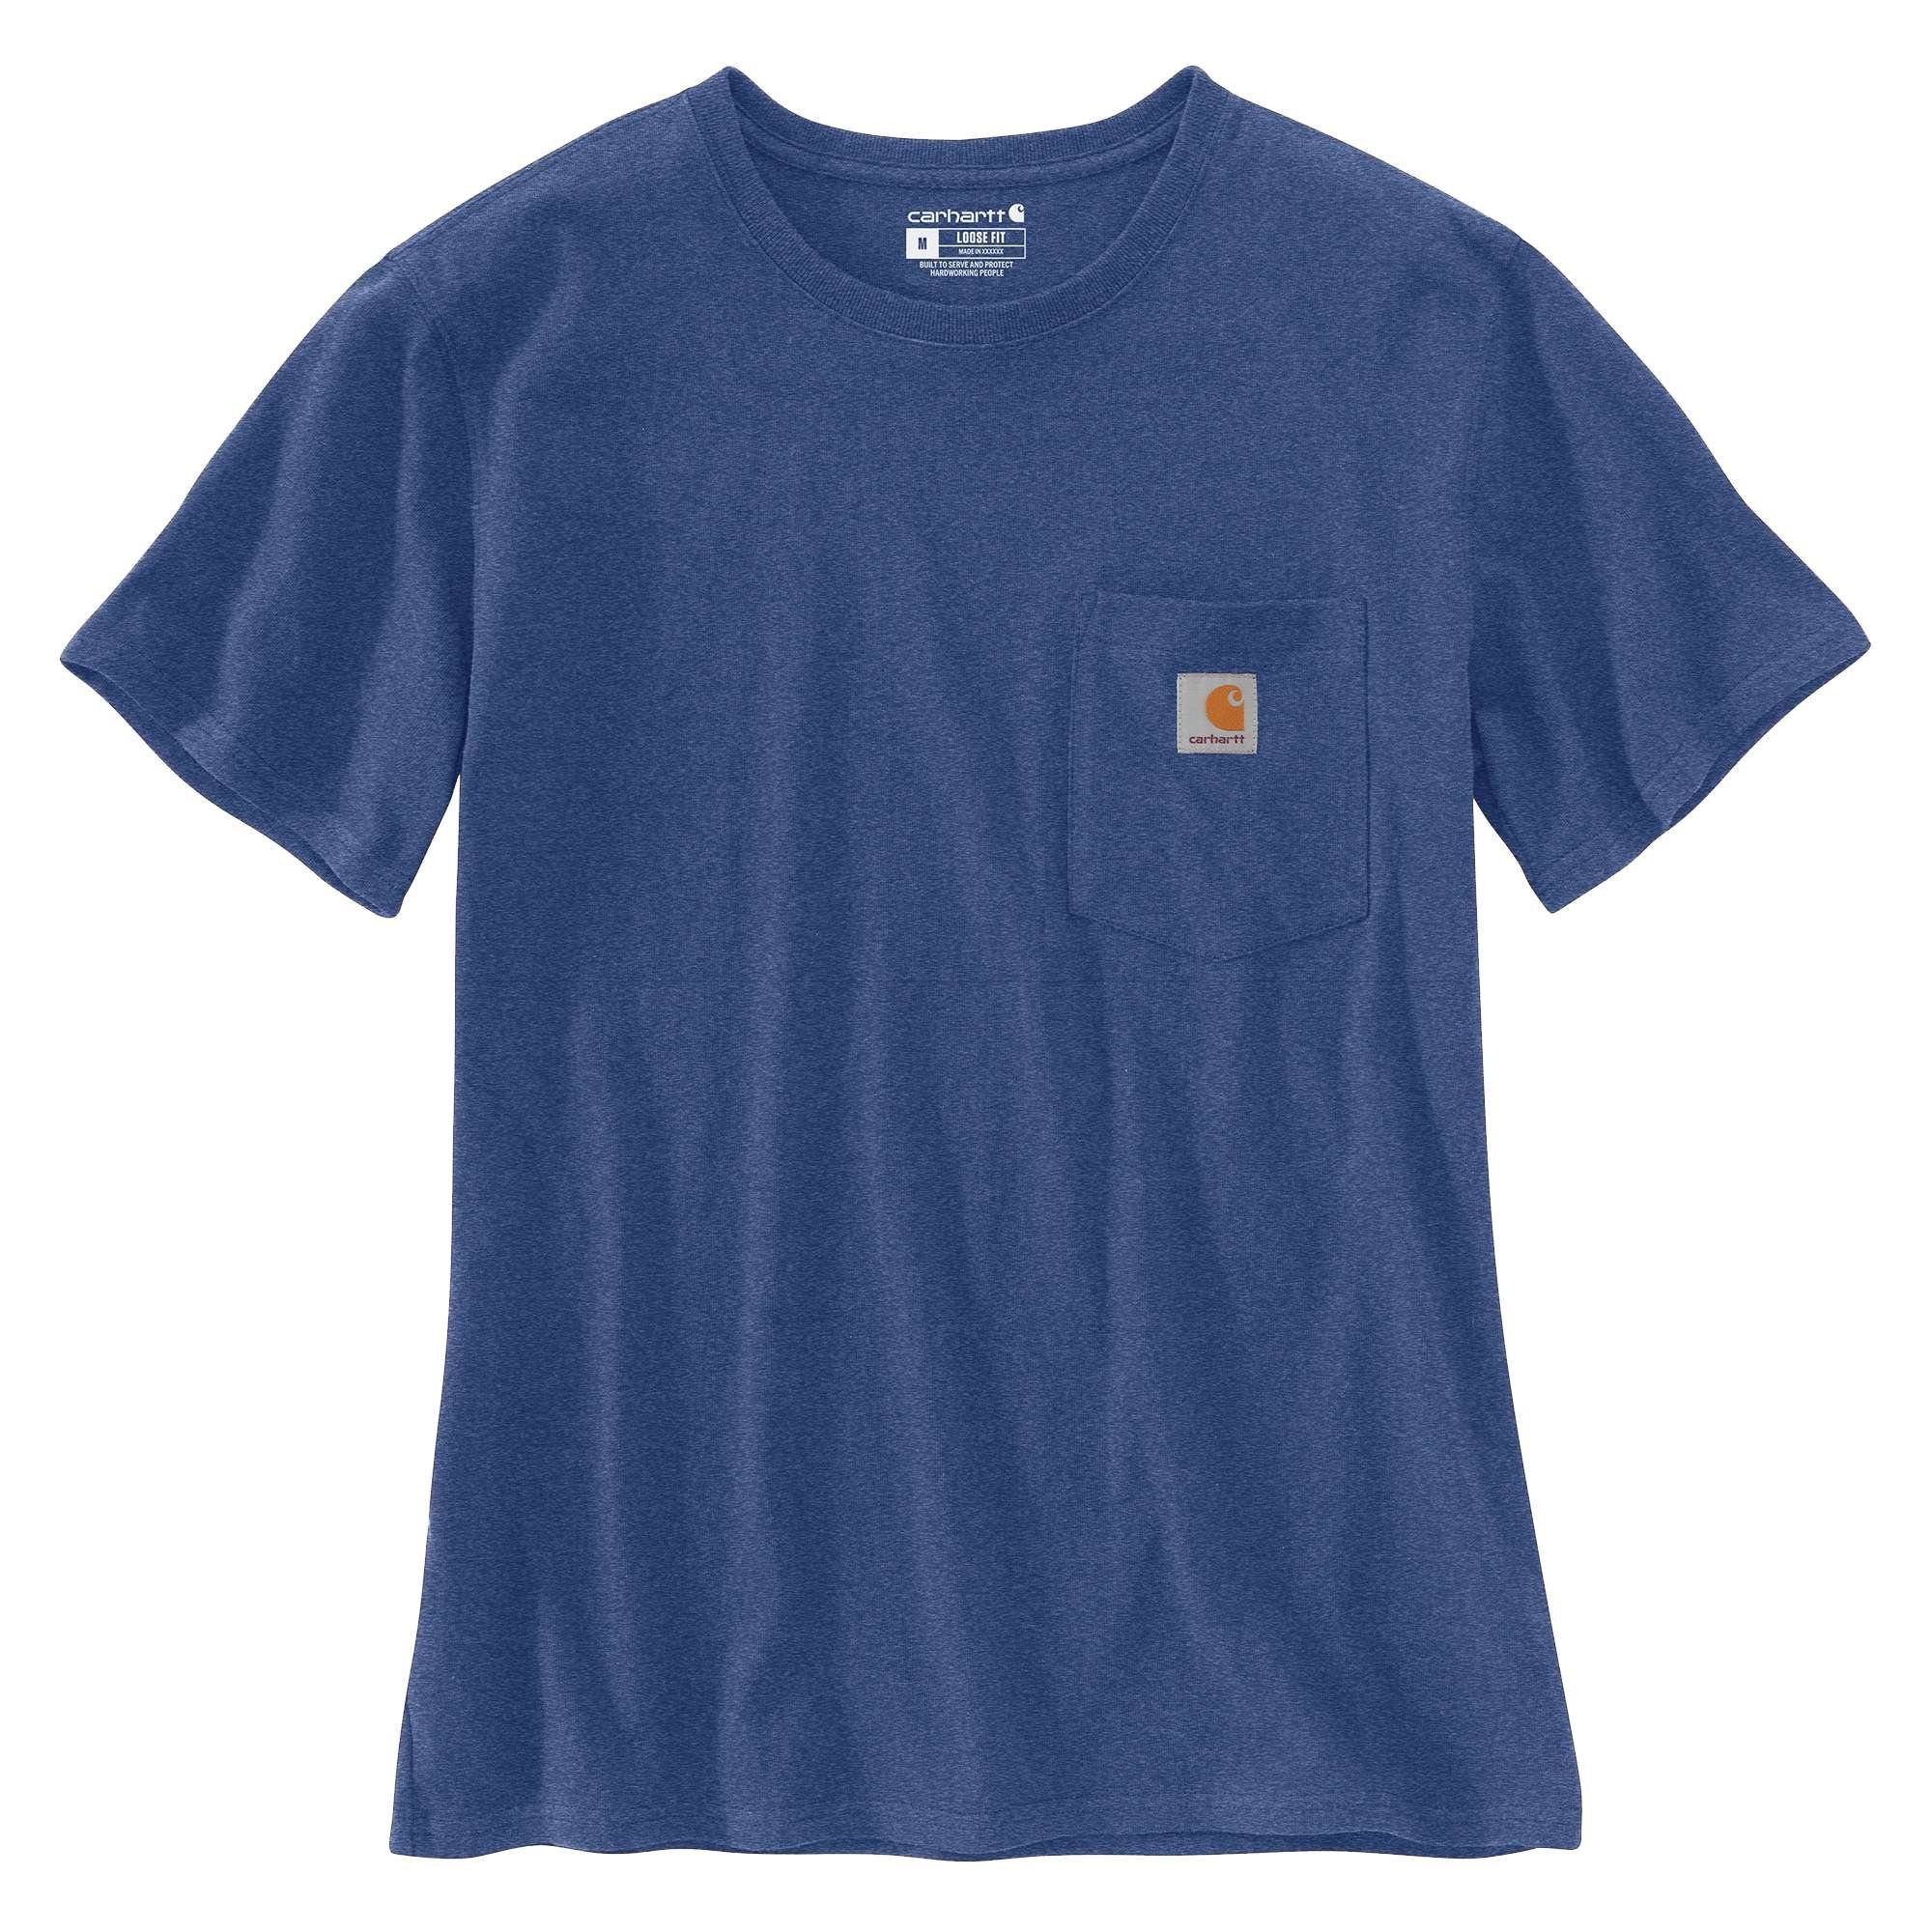 Carhartt T-Shirt Carhartt Damen T-Shirt Heavyweight scout Fit Pocket Adult Short-Sleeve blue heather Loose